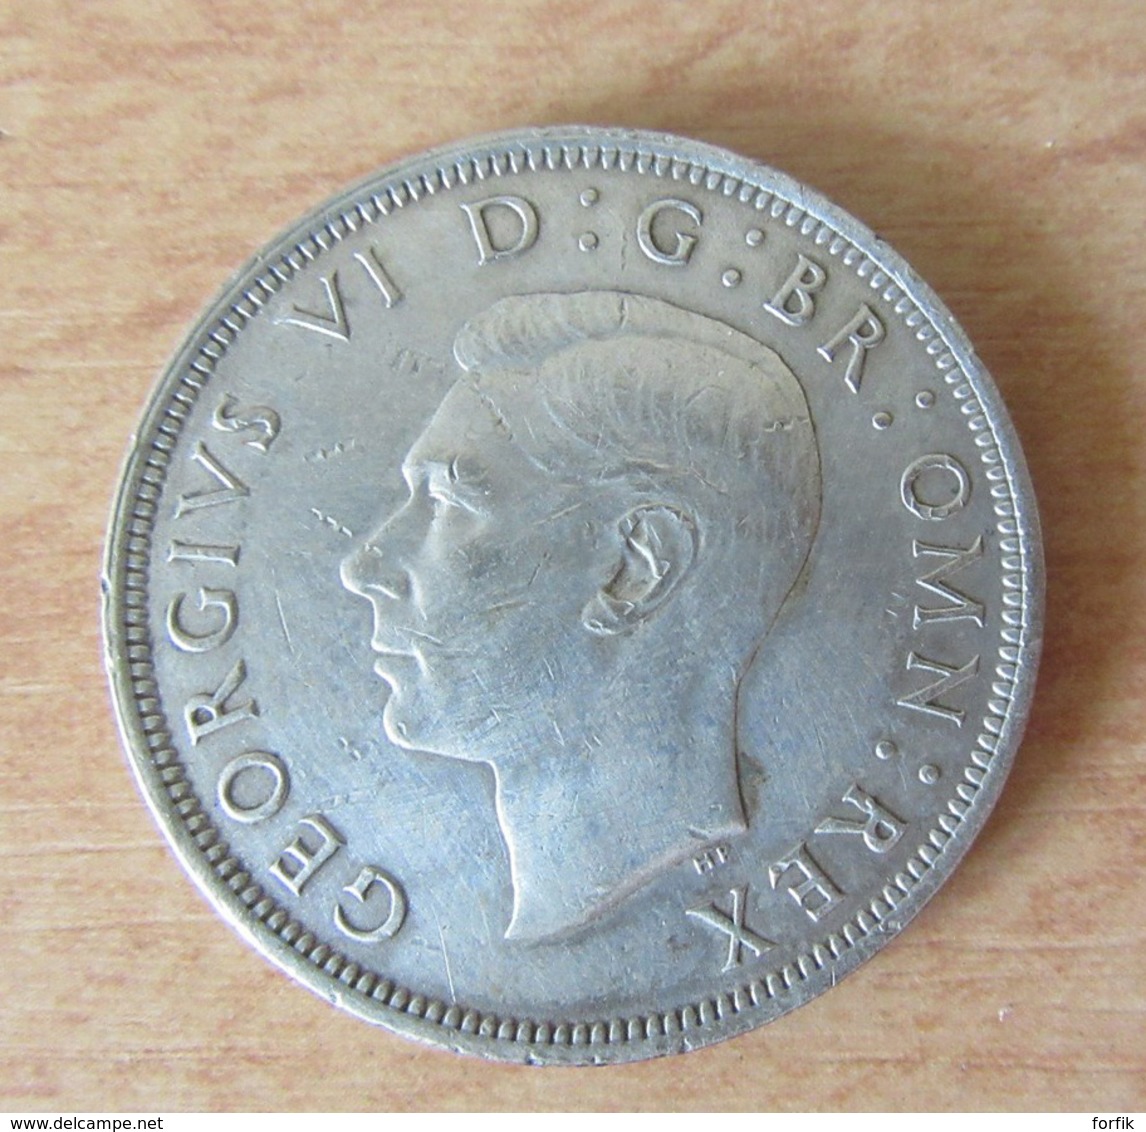 ANGLETERRE - Monnaie Half-Crown (1/2 Crown) 1945 En Argent - K. 1/2 Crown